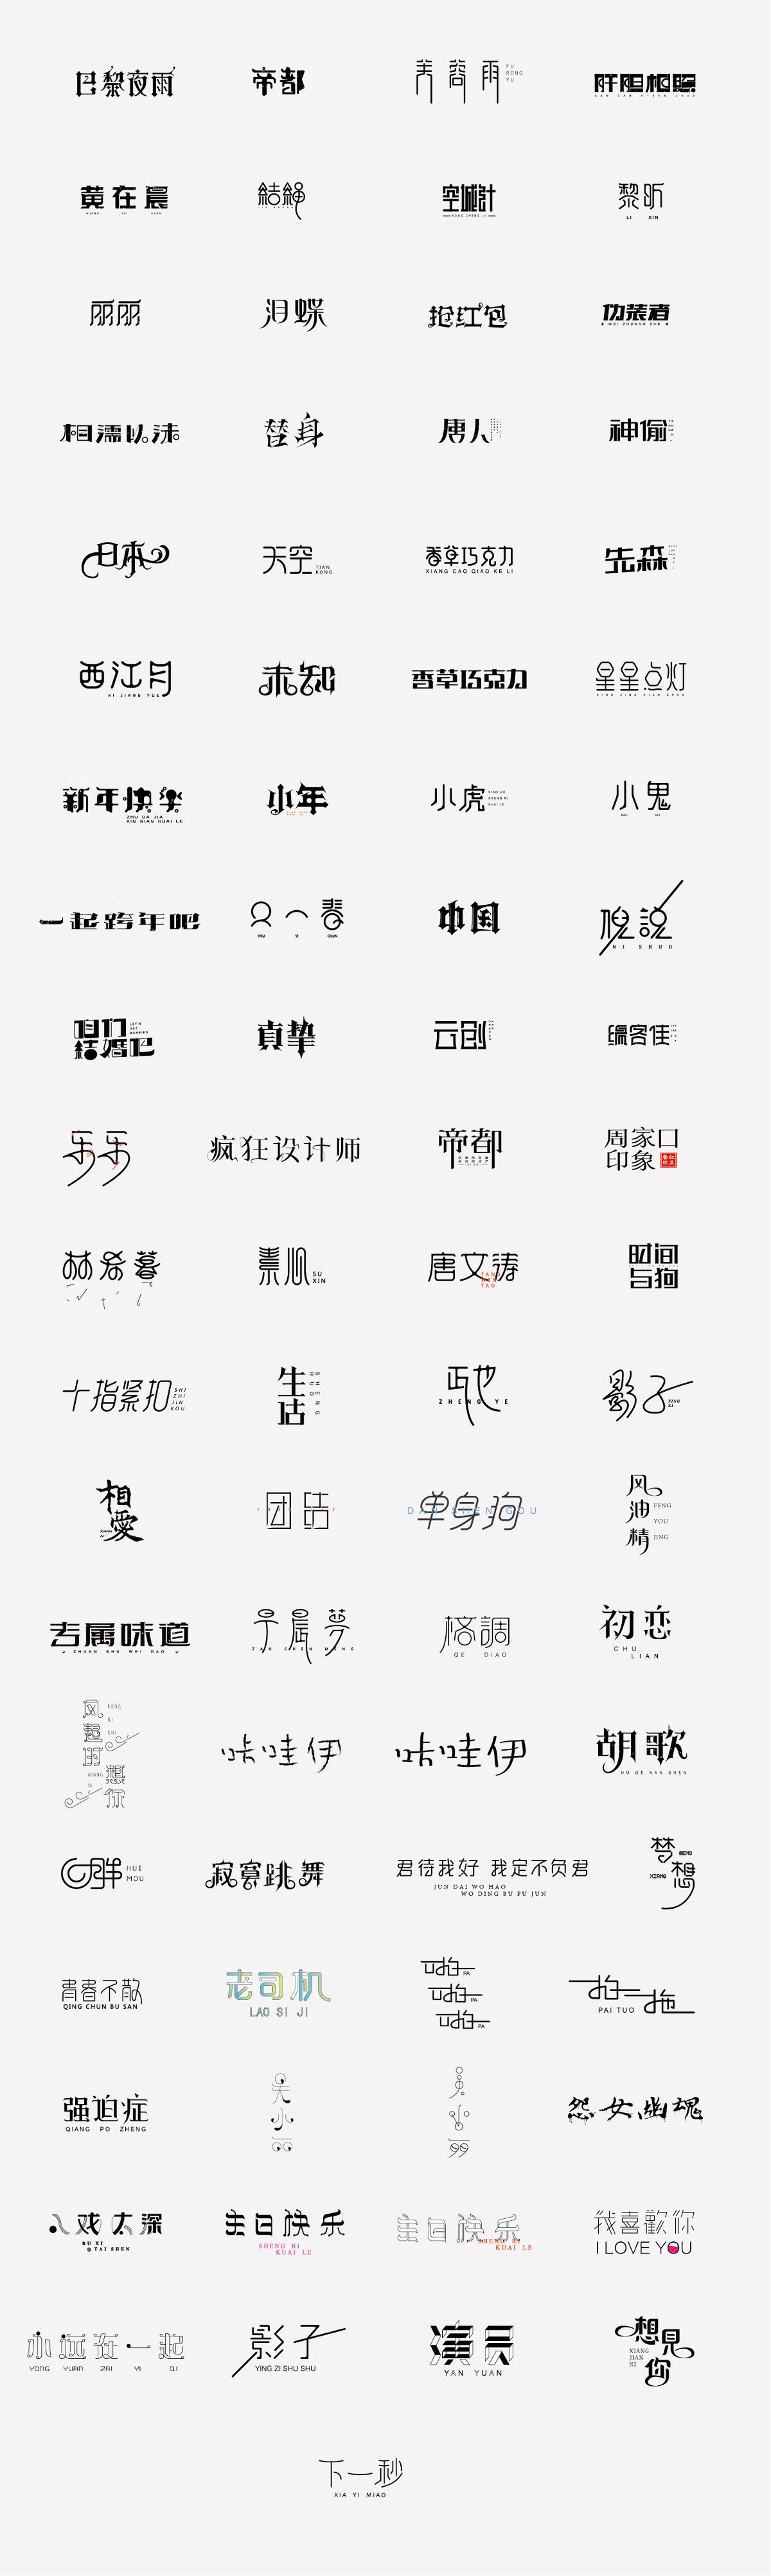 2015-2016字体设计总结